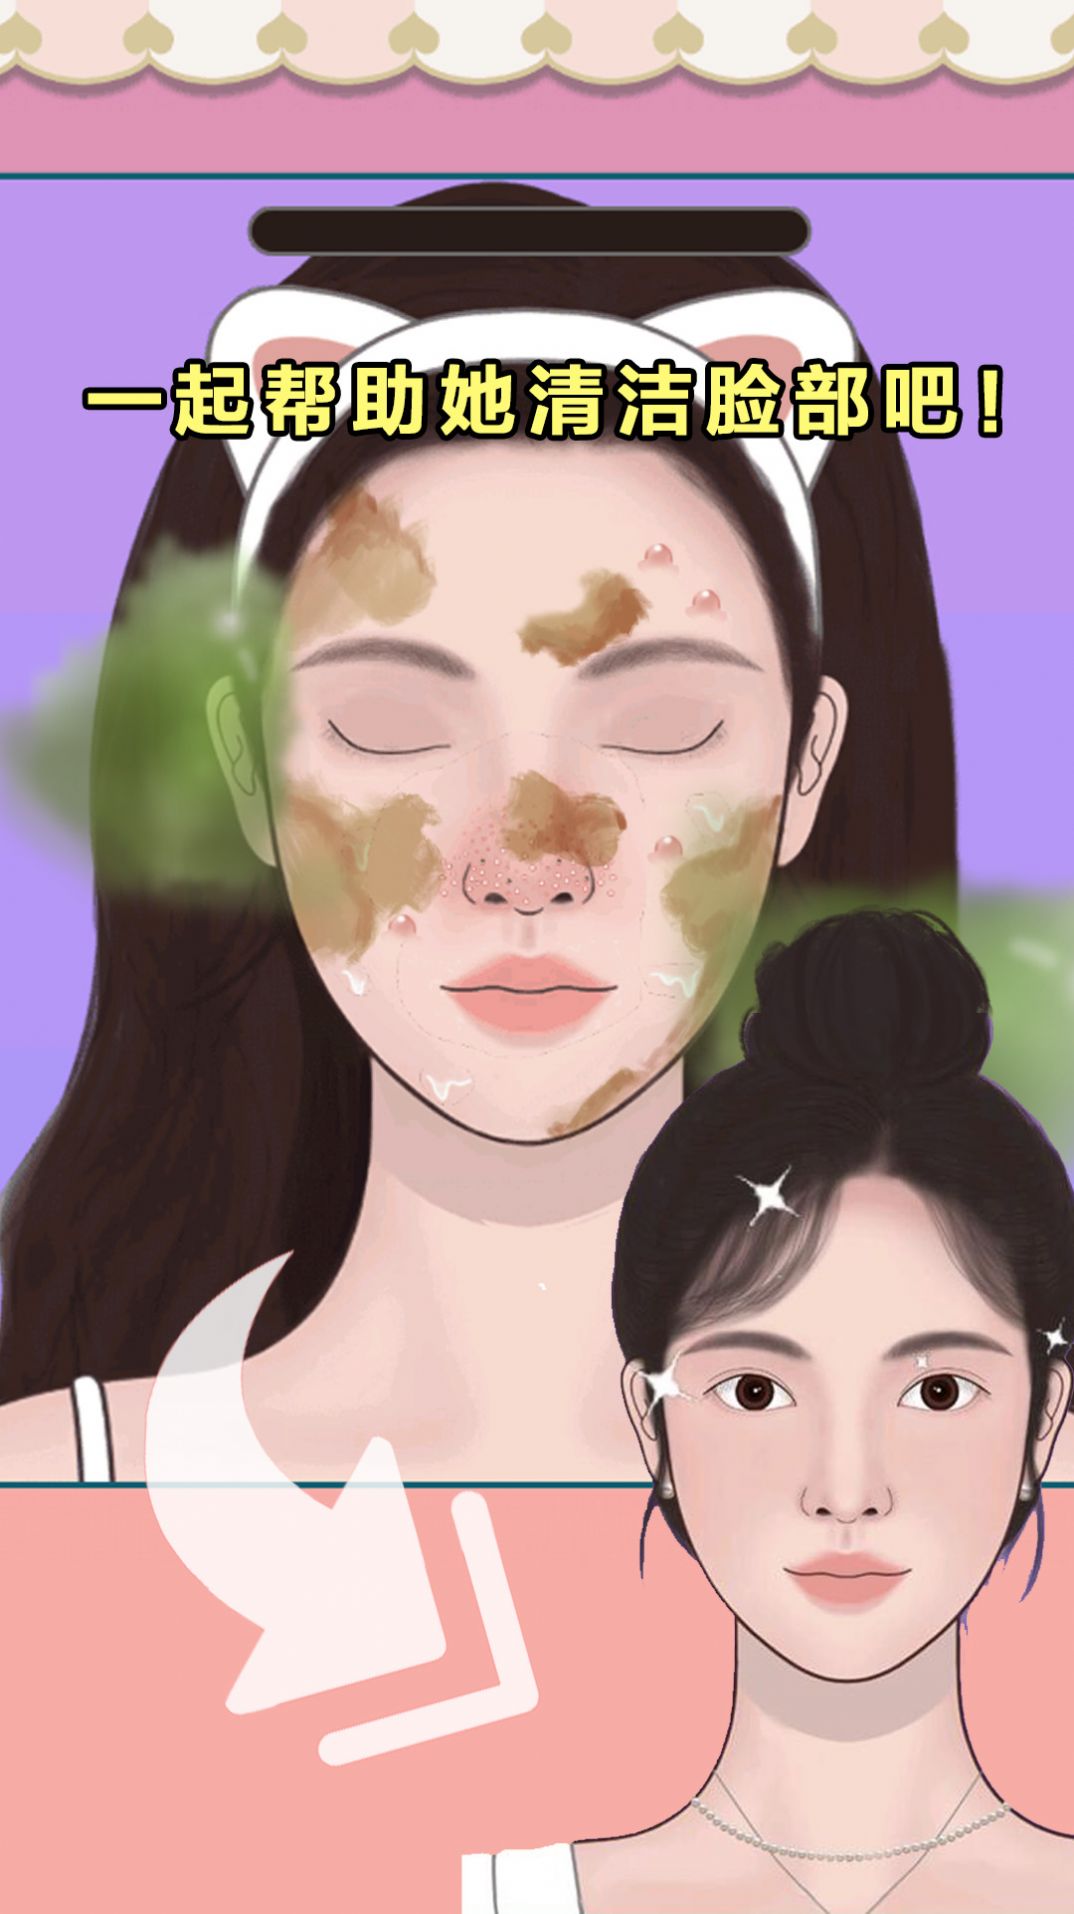 沉浸式美容院游戏下载,沉浸式美容院护肤游戏安卓版 v1.0